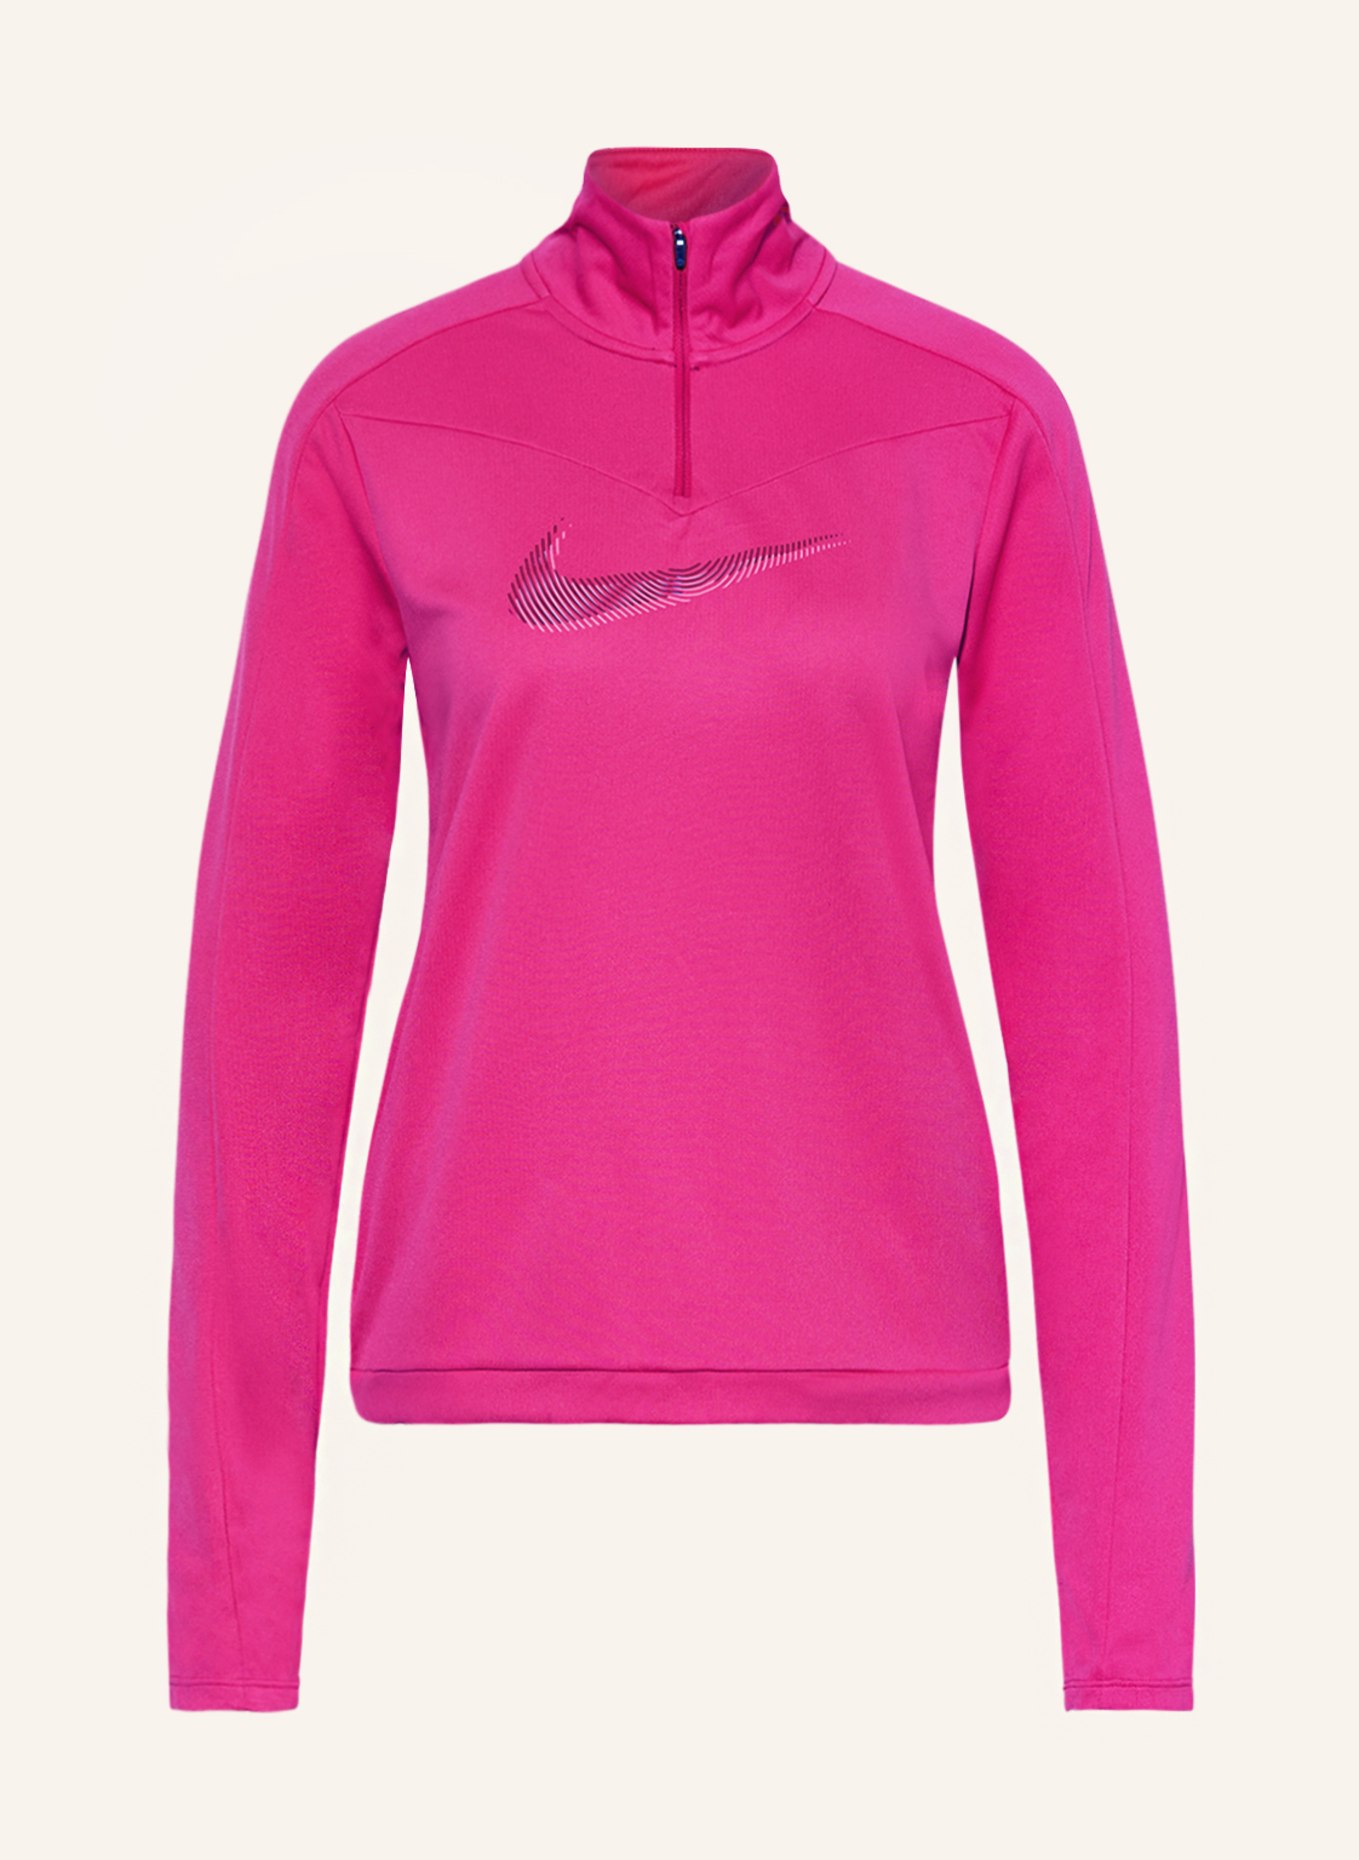 Nike Laufshirt DRI-FIT SWOOSH, Farbe: PINK (Bild 1)